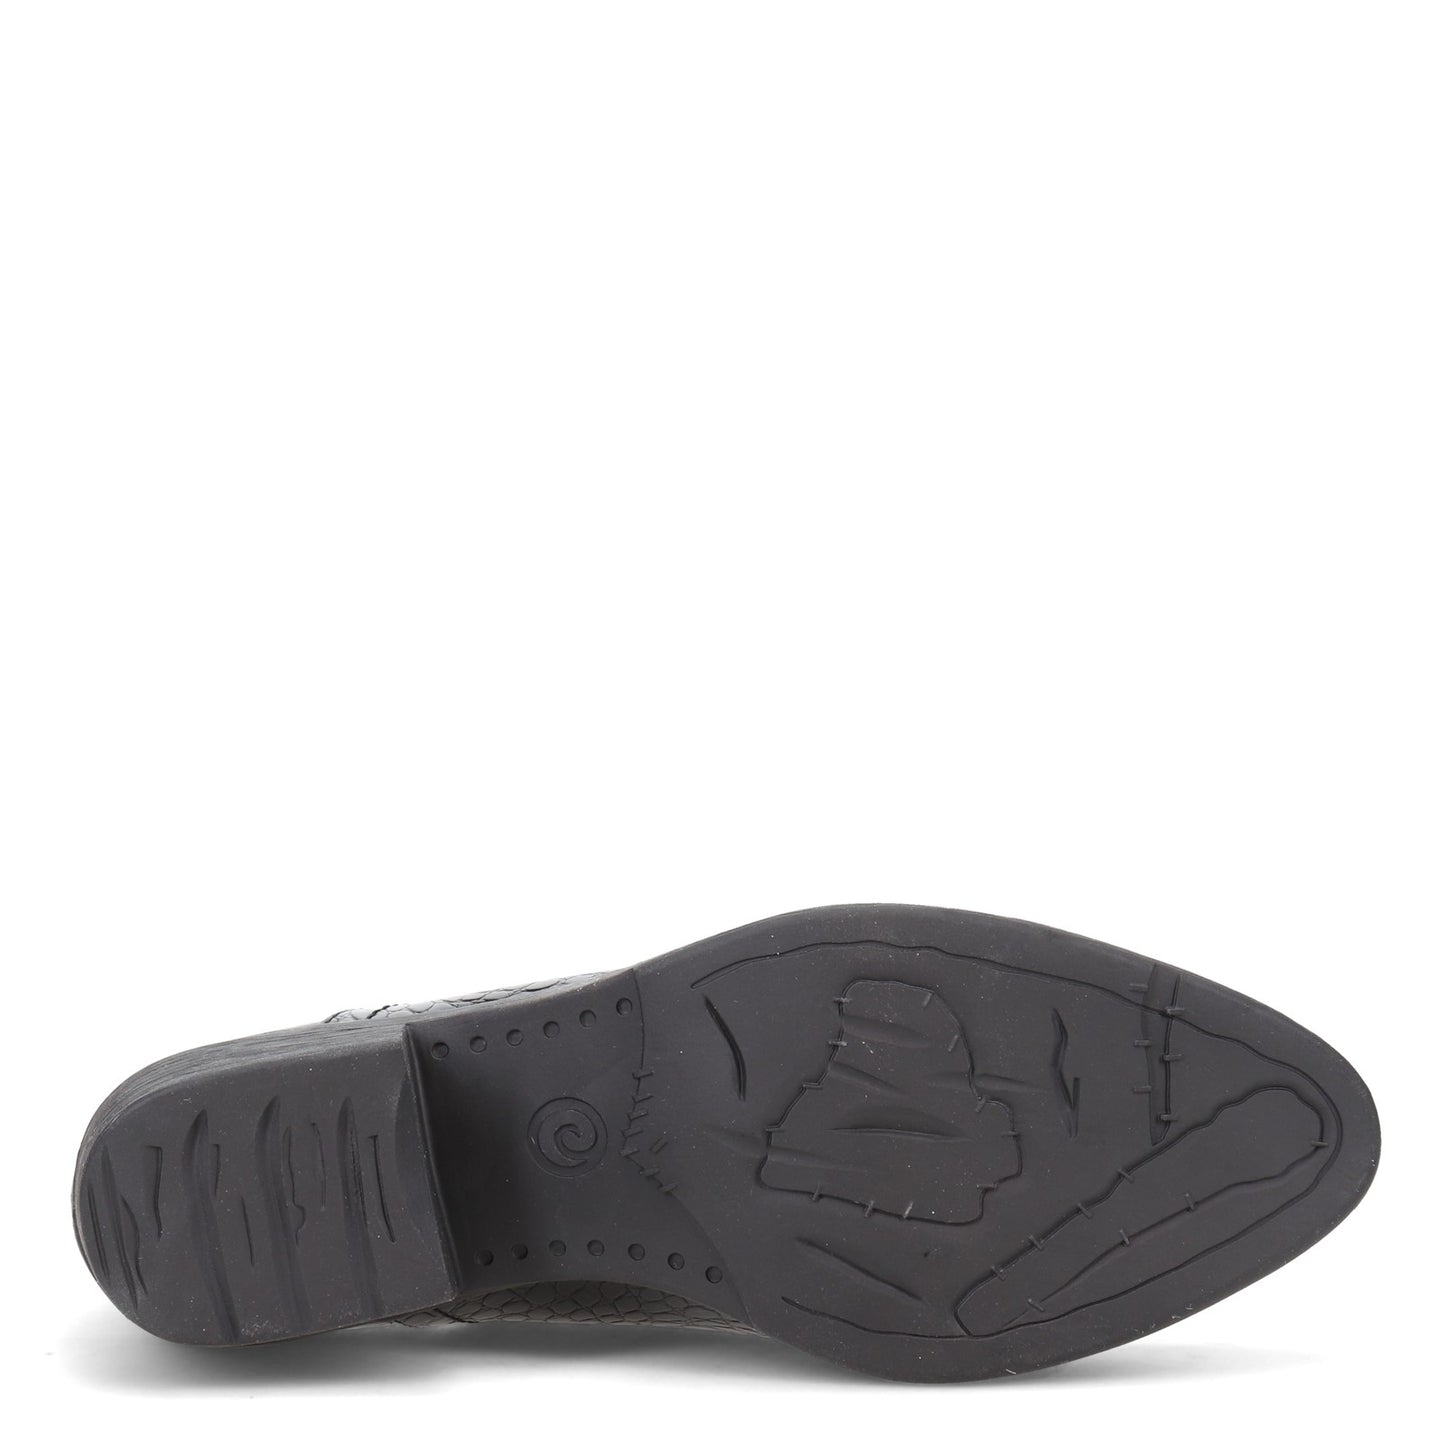 Peltz Shoes  Women's Volatile Chronicle Boot BLACK CROCO PV302-BLKCROC